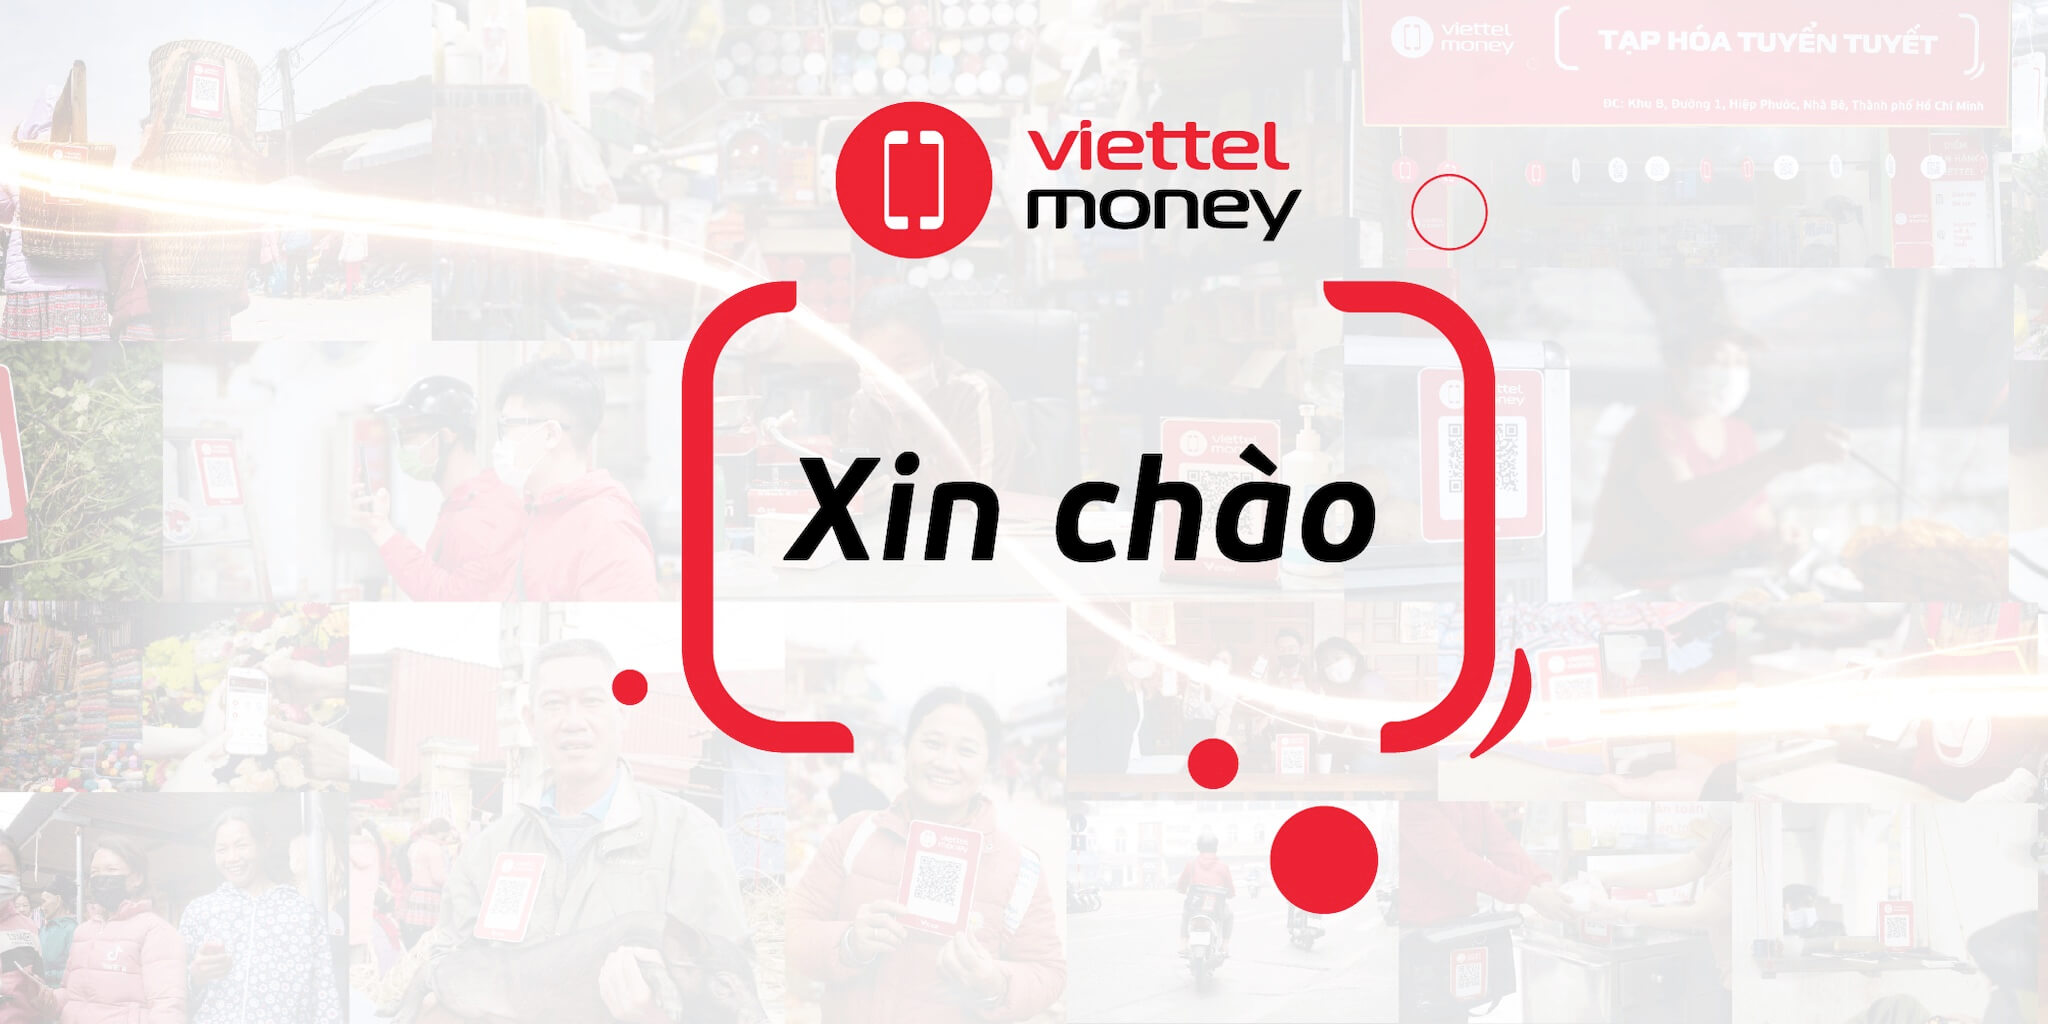 Viettel Money xin chào – Chính thức cung cấp dịch vụ từ hôm nay